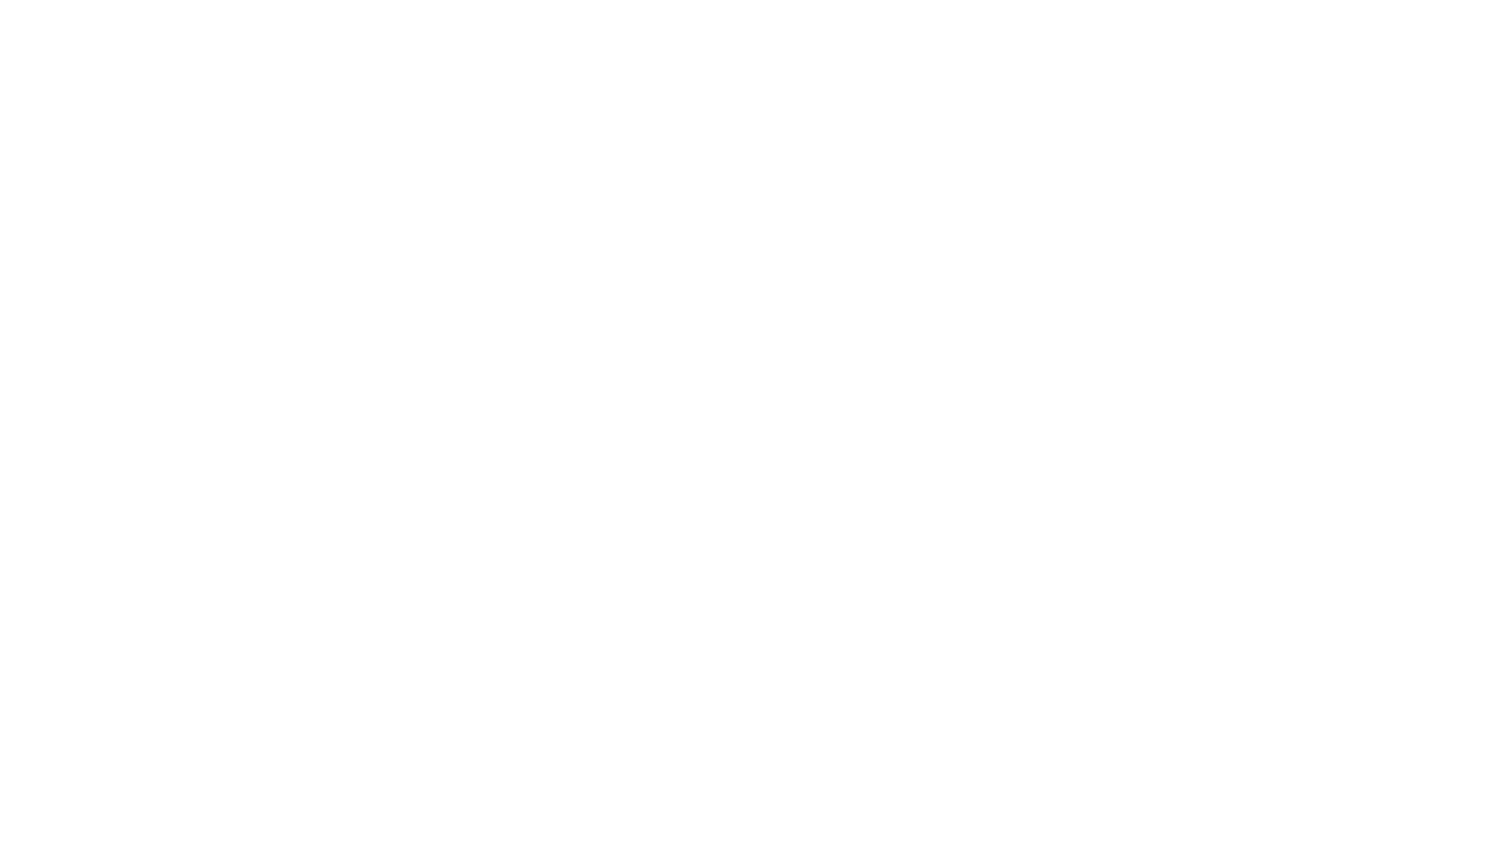 KILONOVA.productions